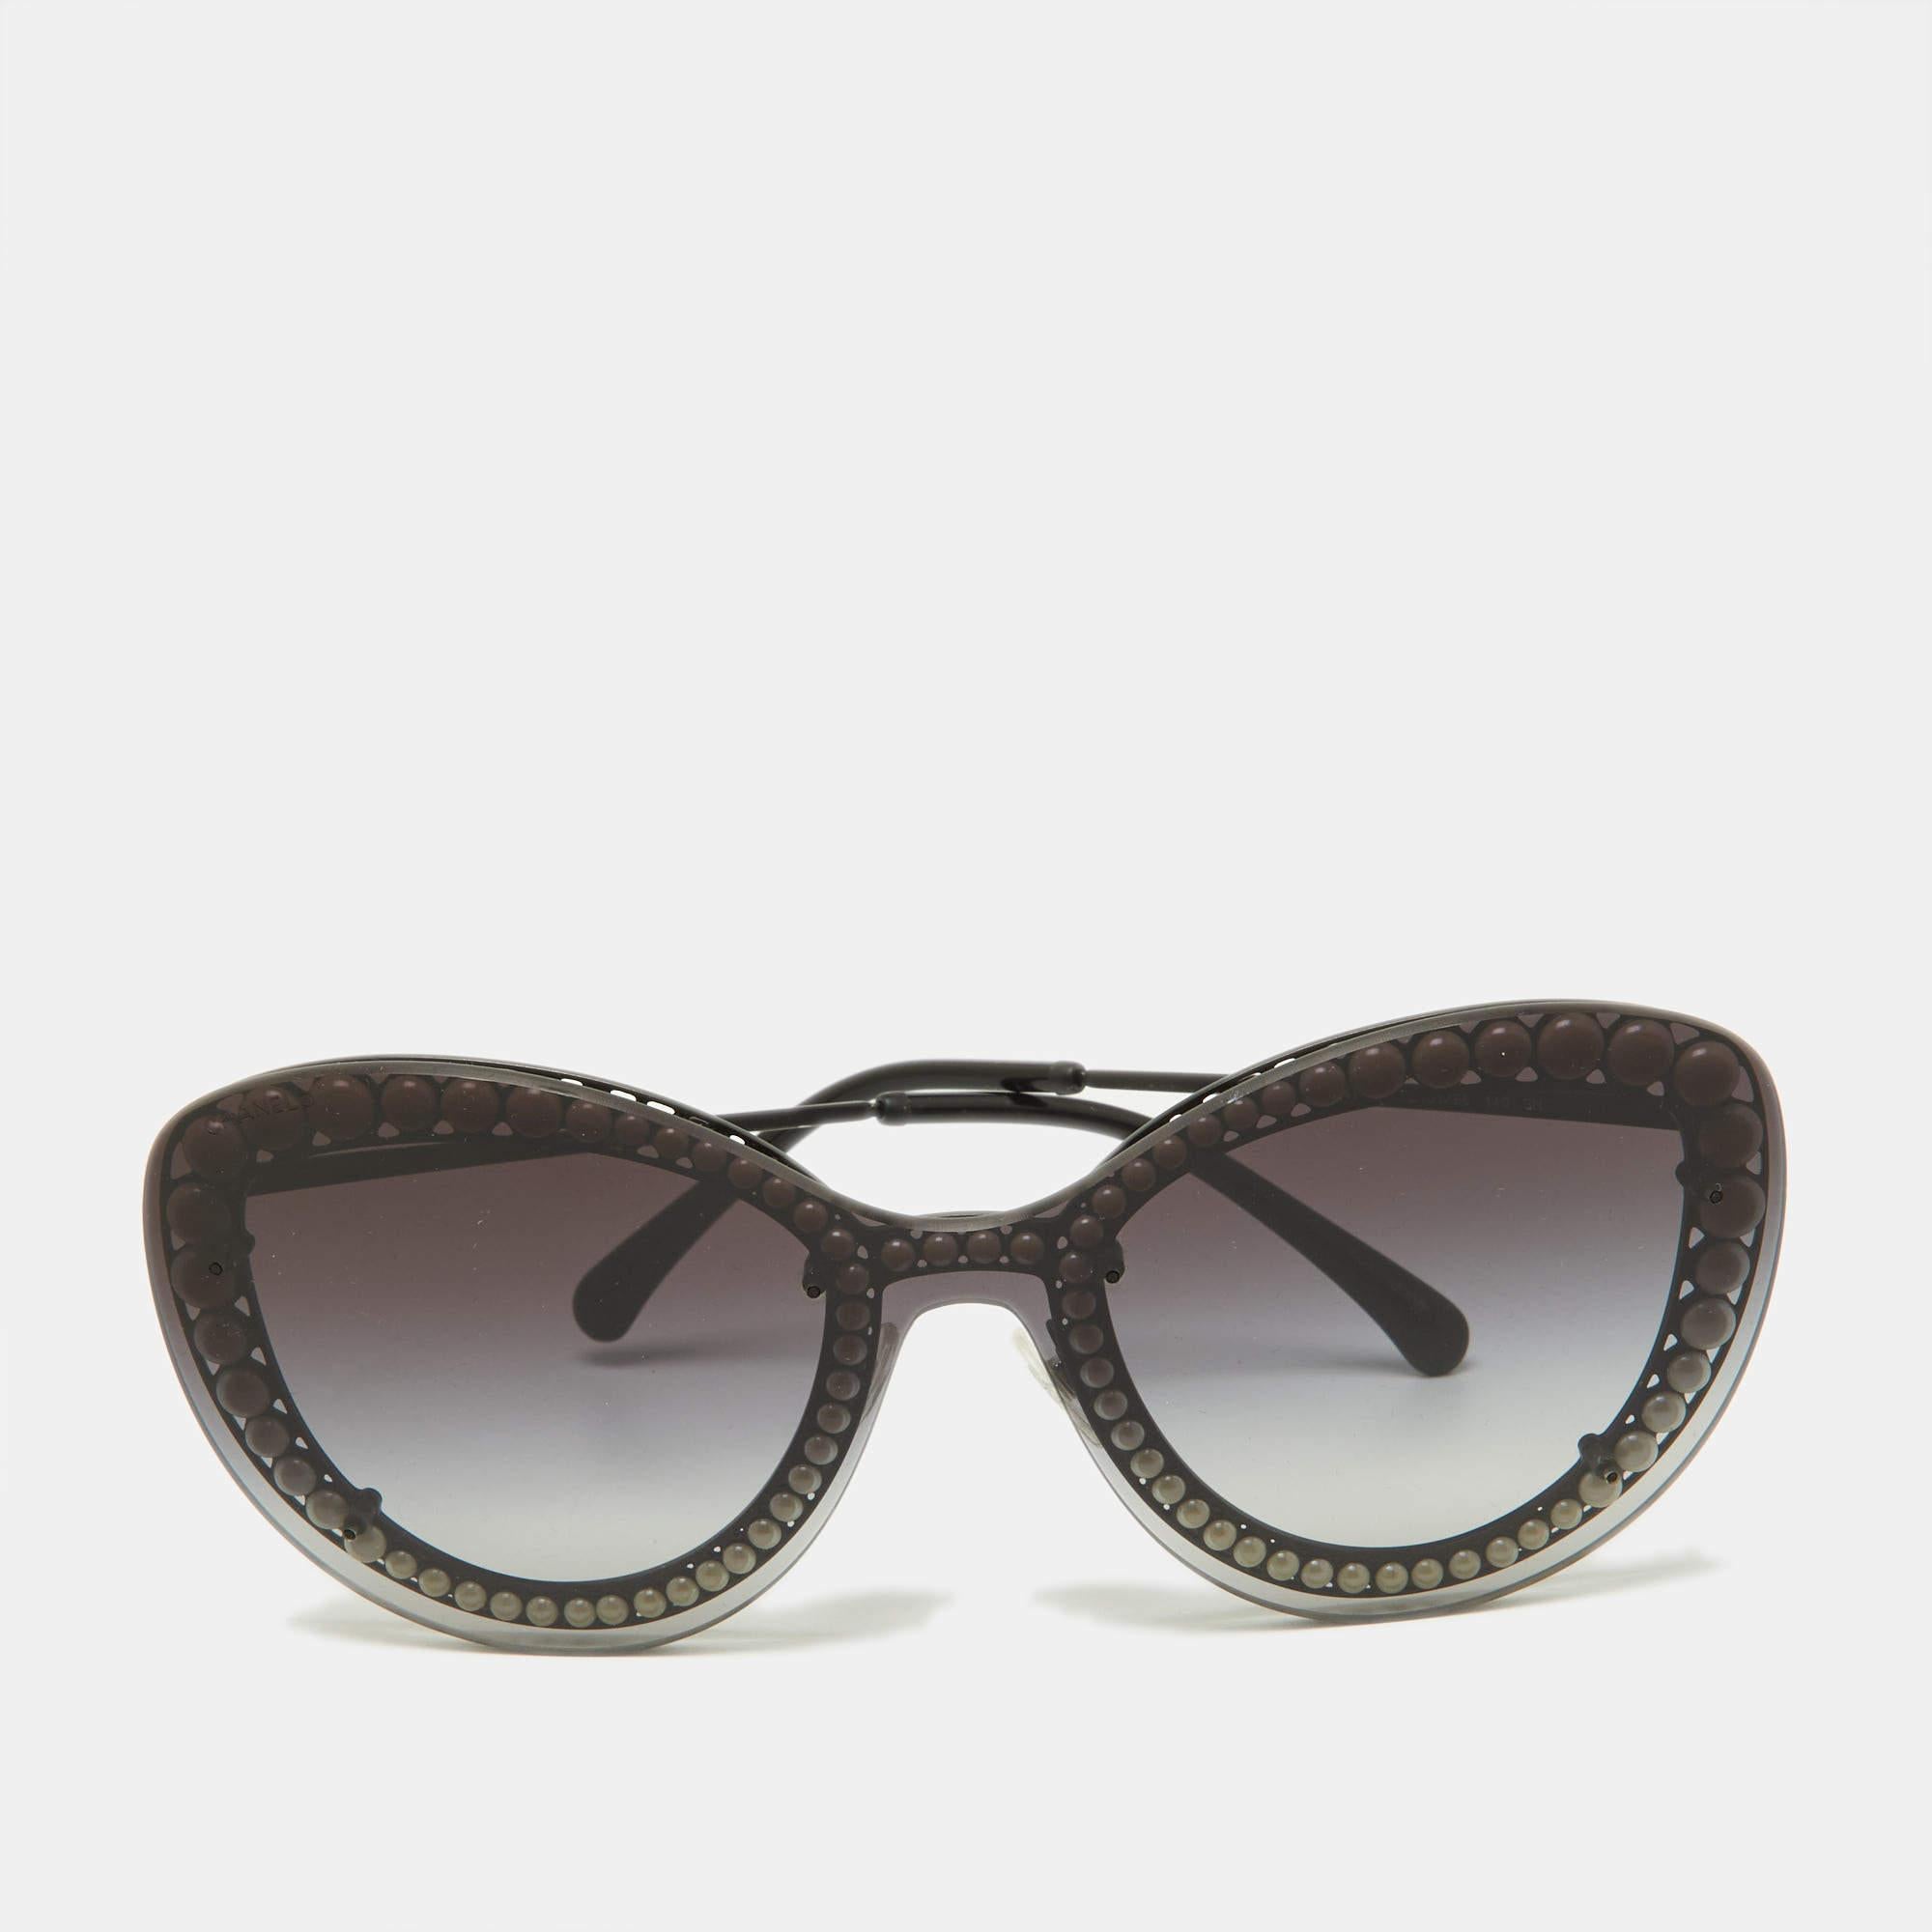 Ces lunettes de soleil Chanel pour femme vous permettront d'élever votre niveau de vue. Méticuleusement fabriqués à partir de matériaux de première qualité, ils offrent une protection inégalée et un design intemporel, ce qui en fait un accessoire